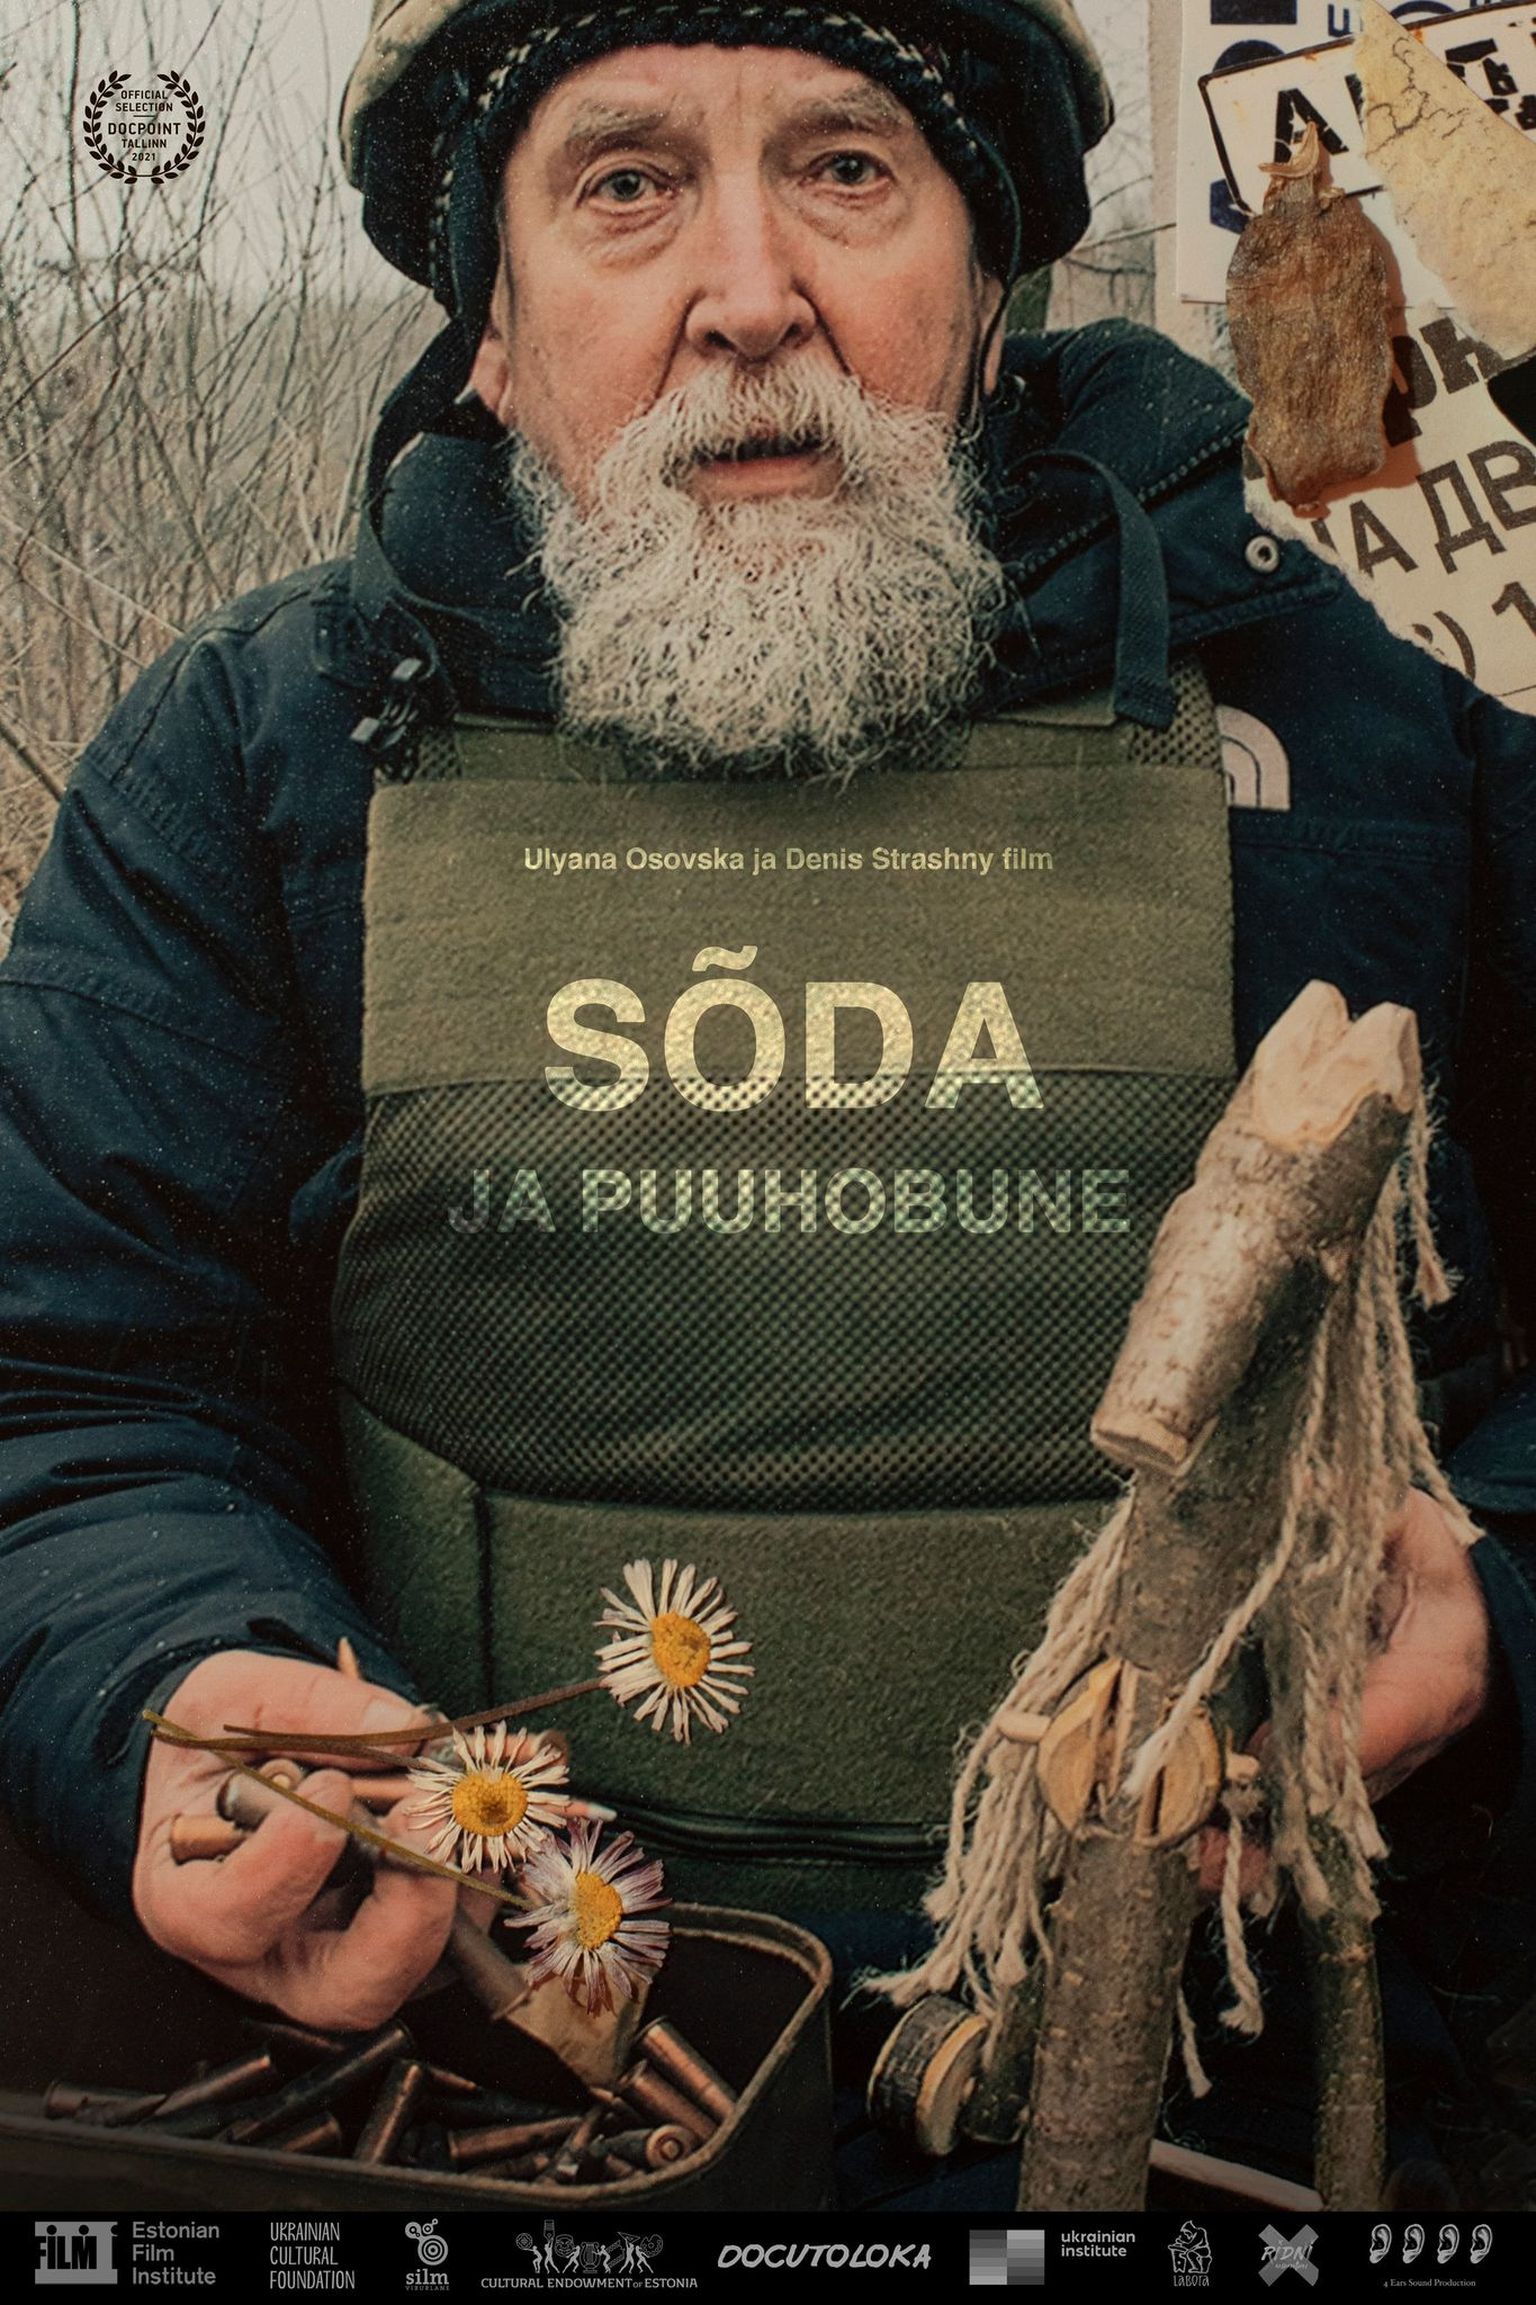 Постер эстонско-украинского фильма "Сказка про коника"